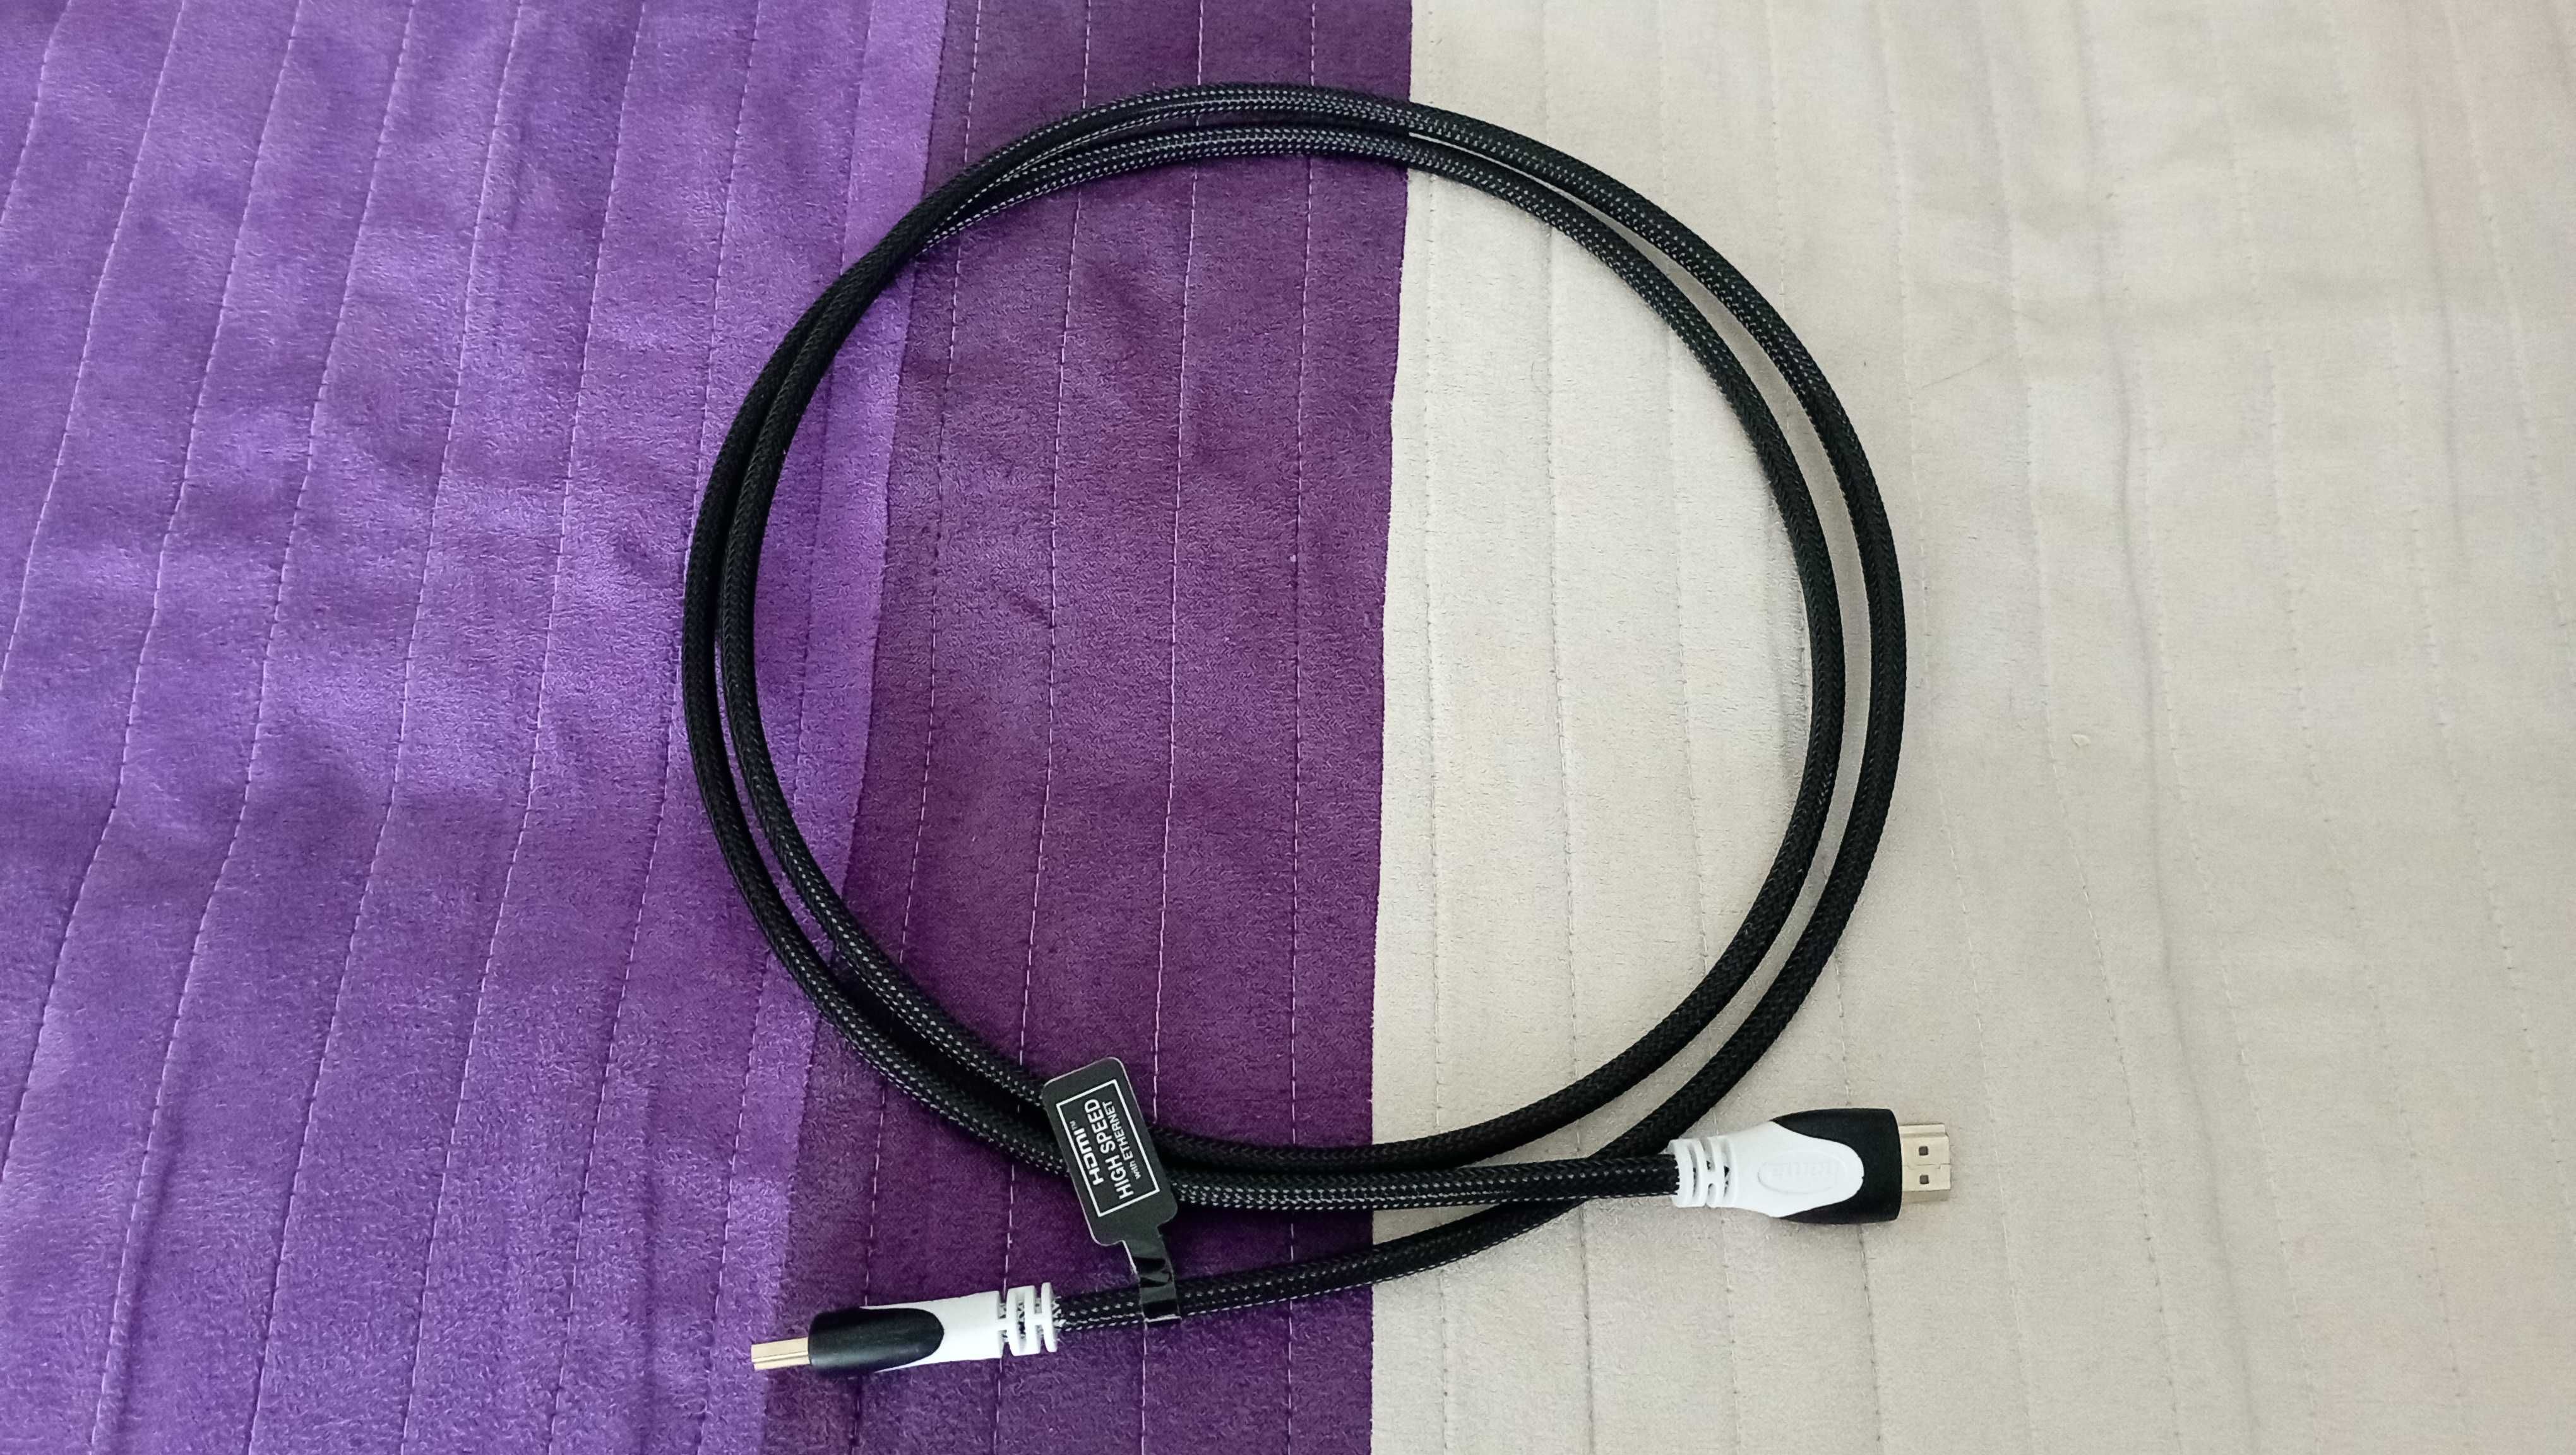 Cabluri Hdmi 4k nou și hdmi-mini hdmi nou